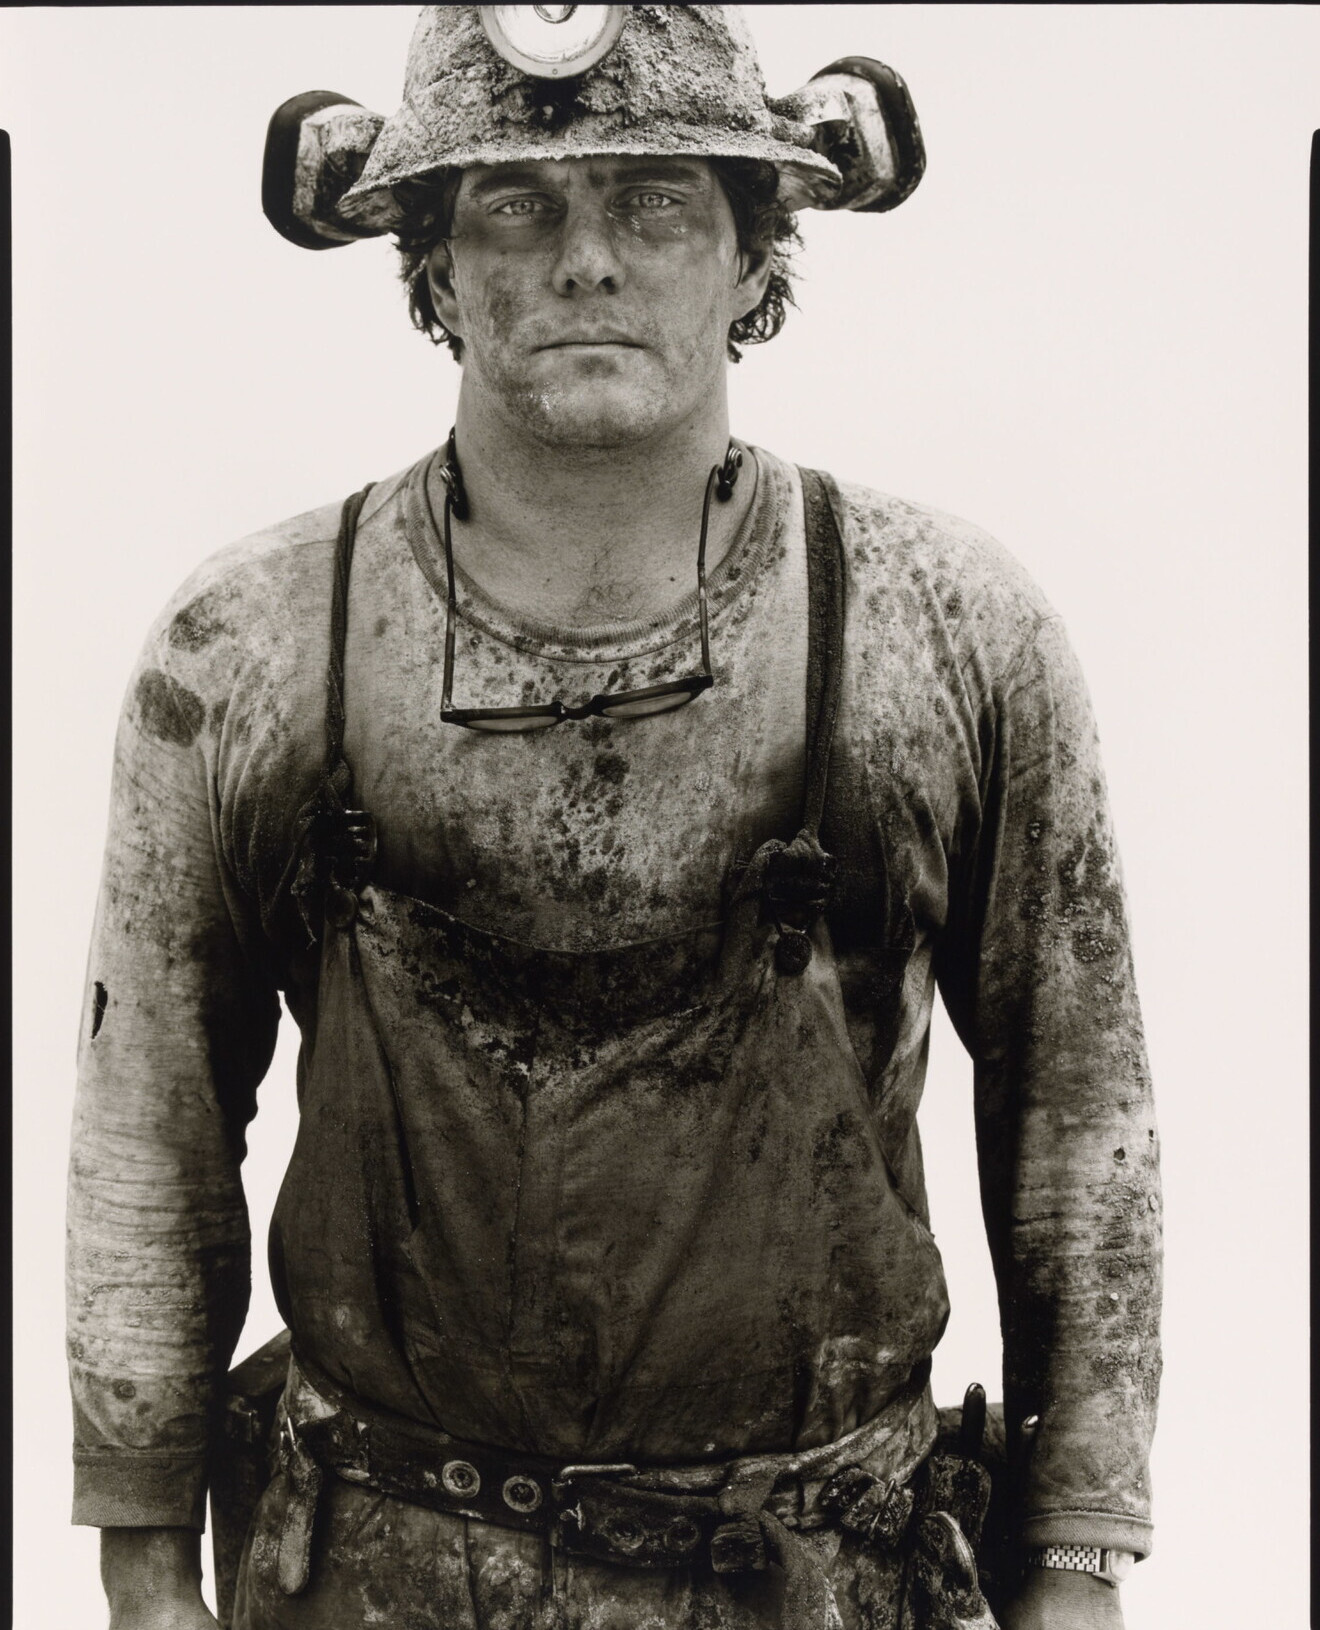 Джо Добош, добытчик урана, Черч-Рок, Нью-Мексико, 1979. Фотограф Ричард Аведон